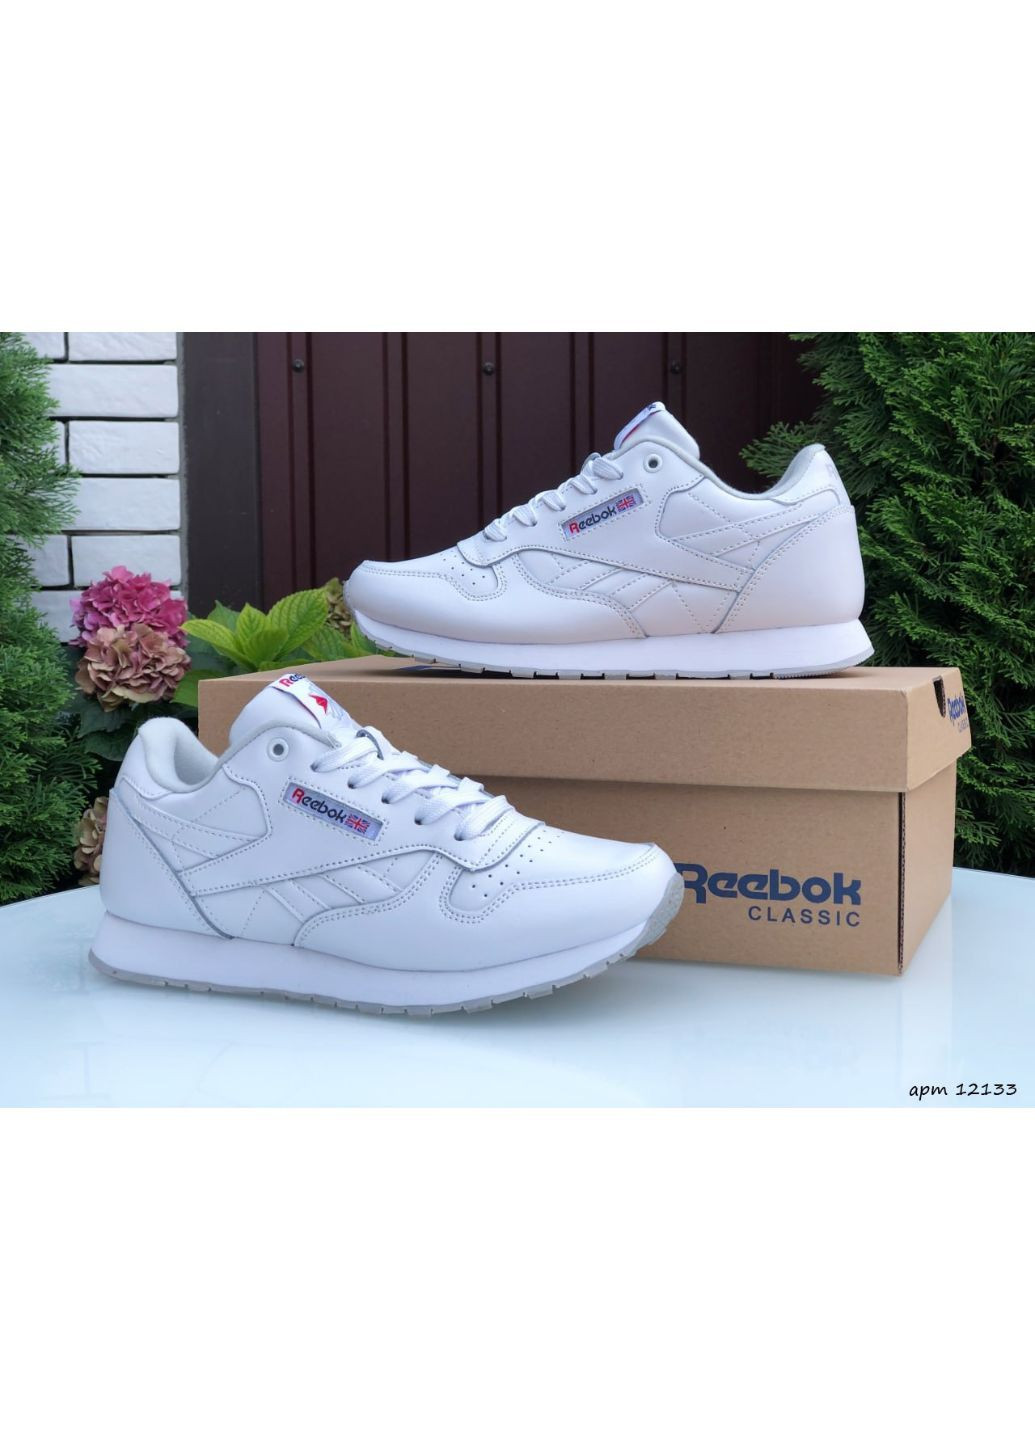 Белые демисезонные женские кроссовки белые «no name» Reebok Classic